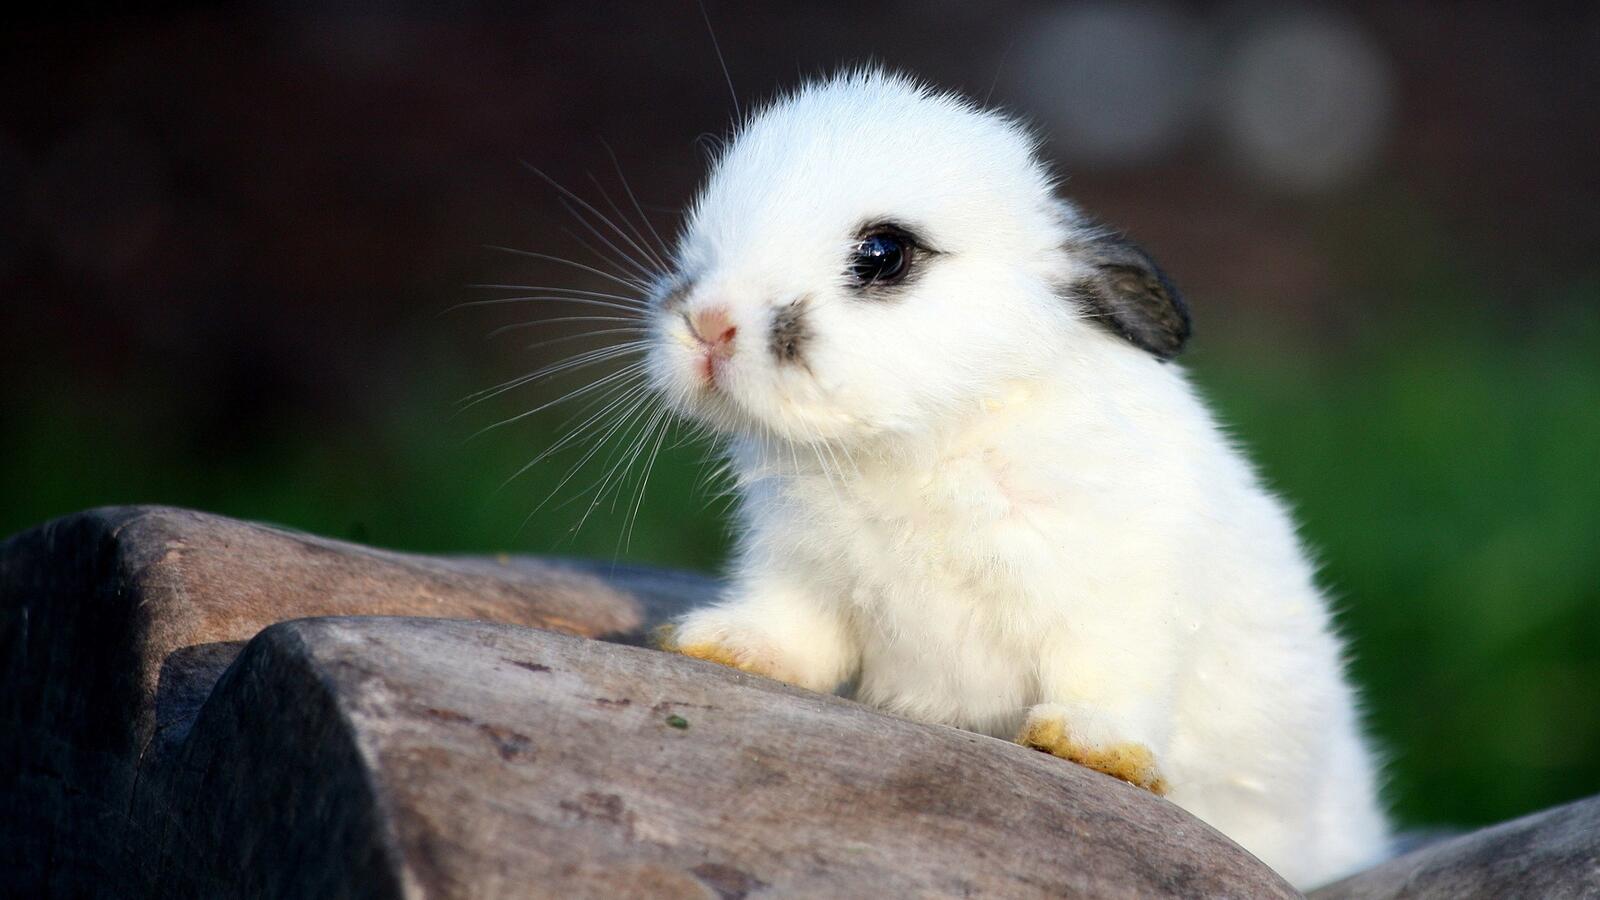 Бесплатное фото Картинка с милым белым кроликом